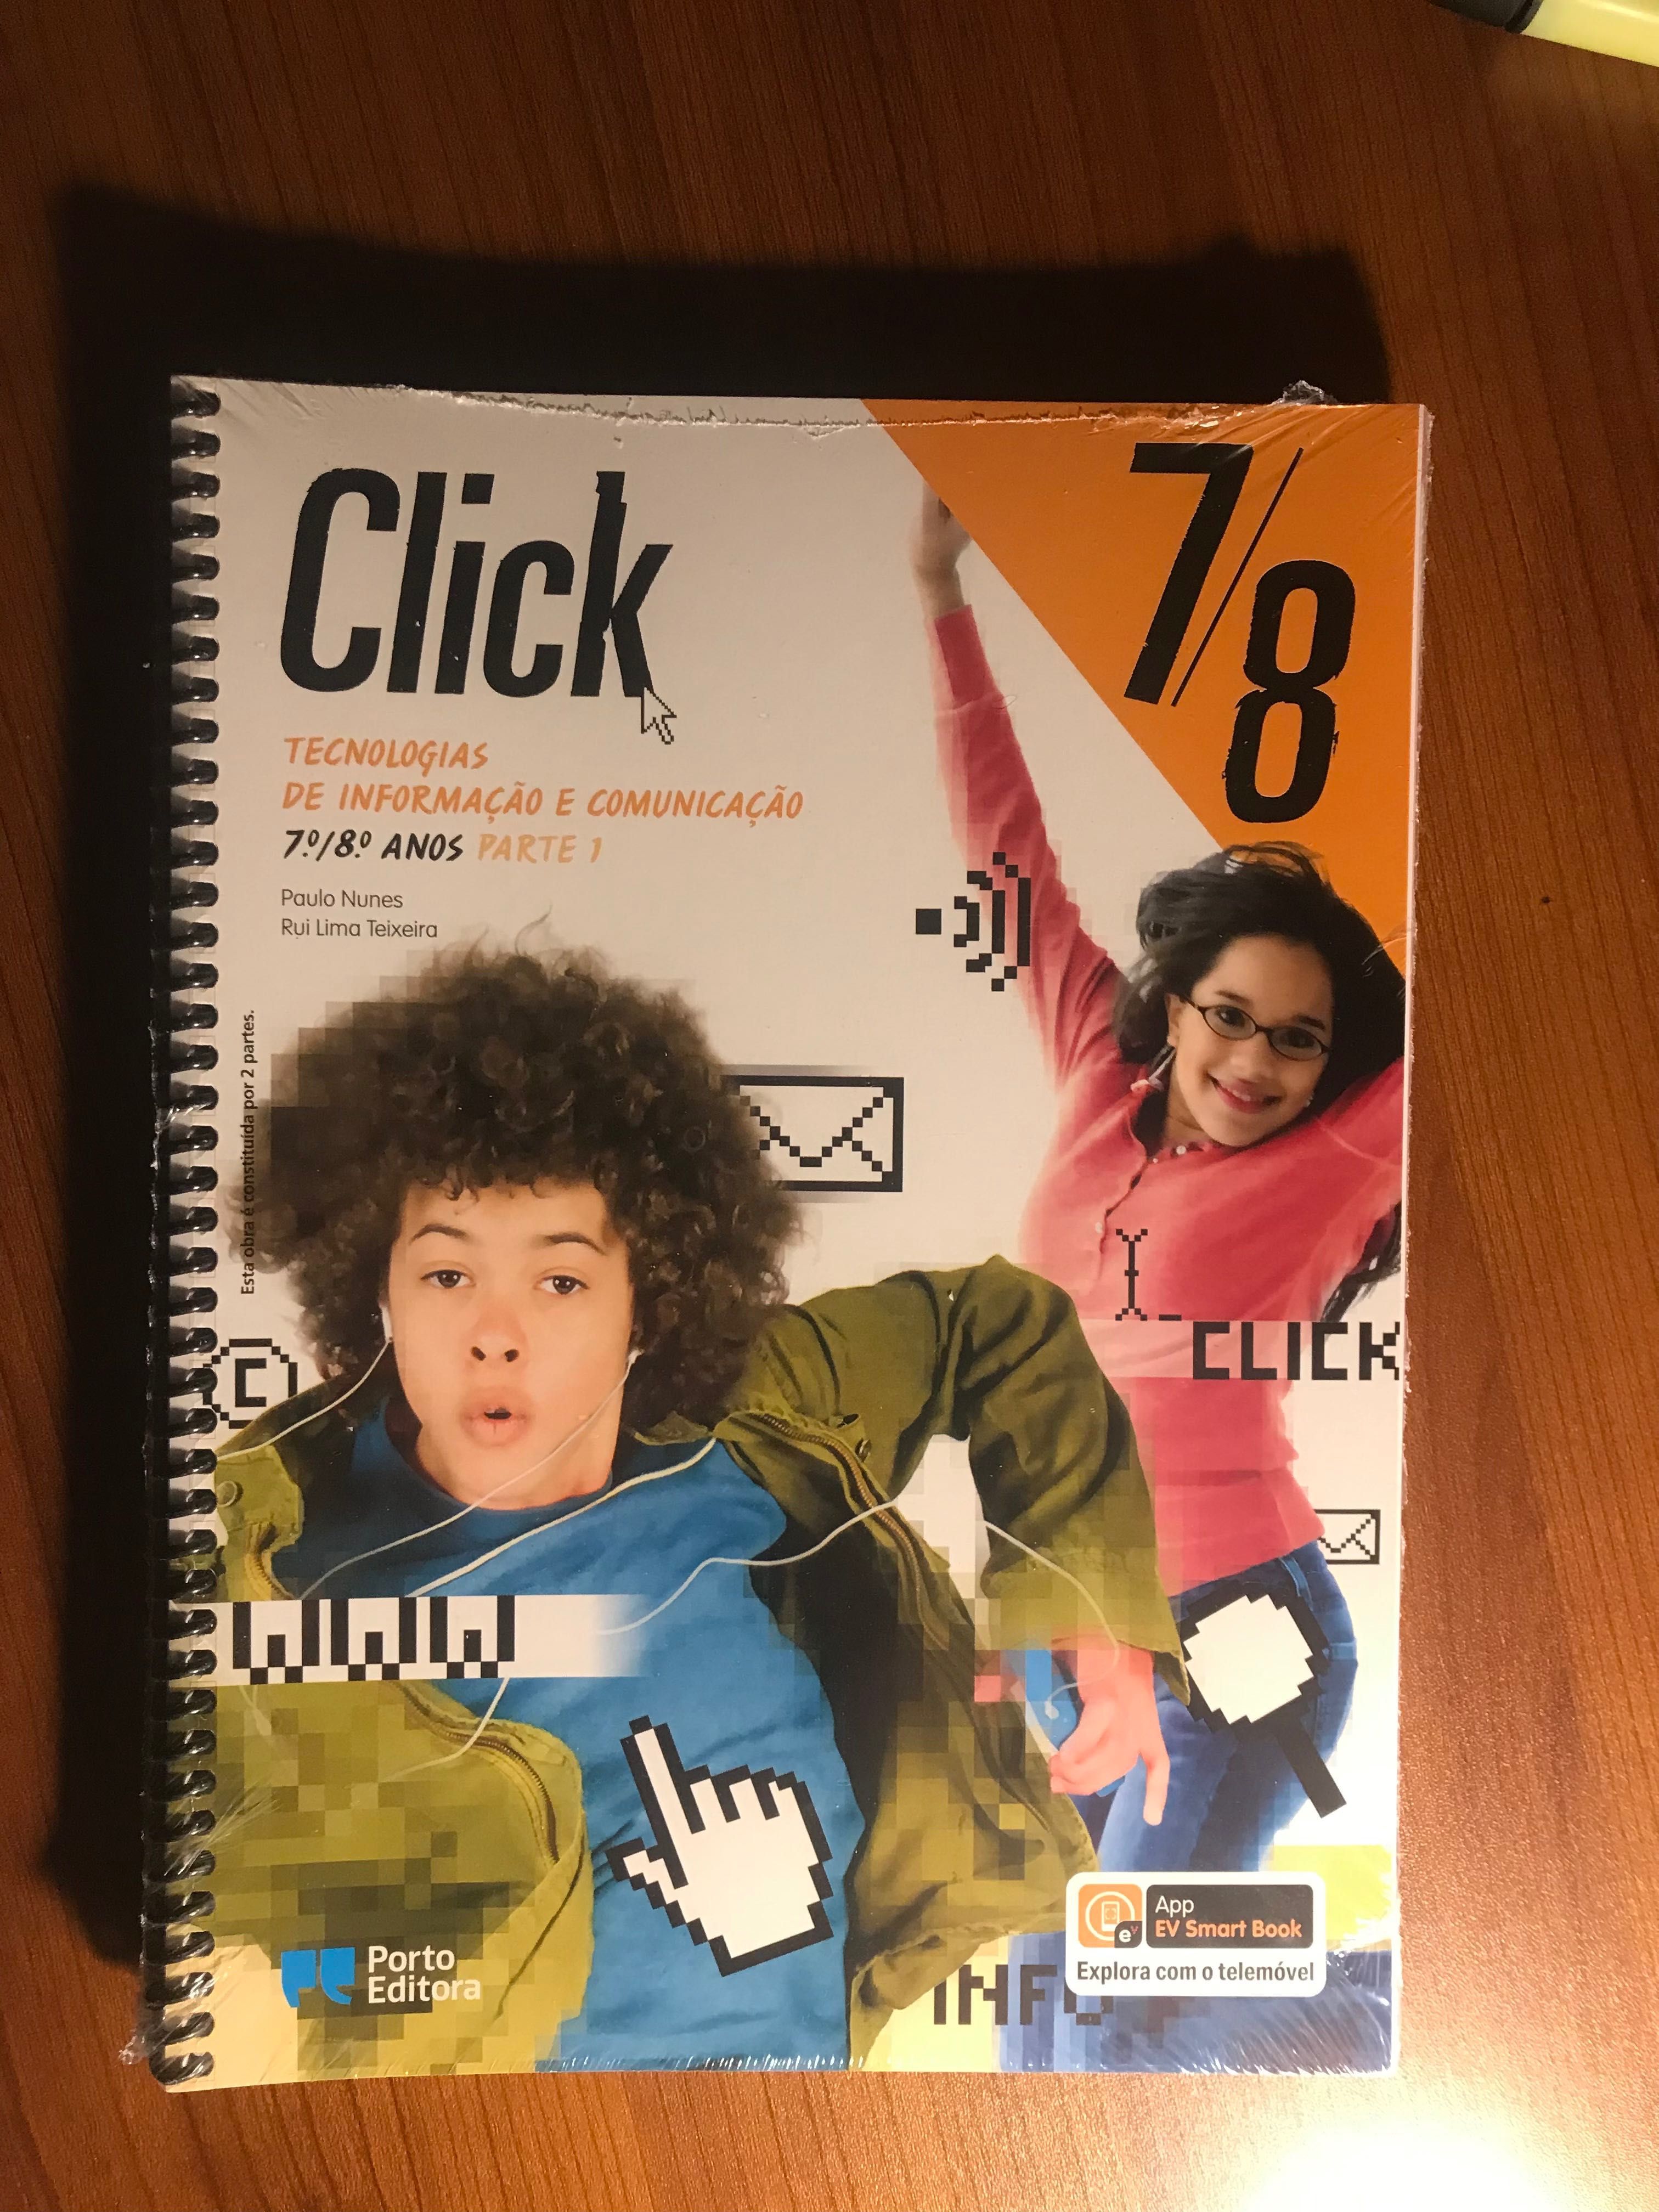 Click 7/8 - Tecnologias de informação e comunicação 7/8 anos